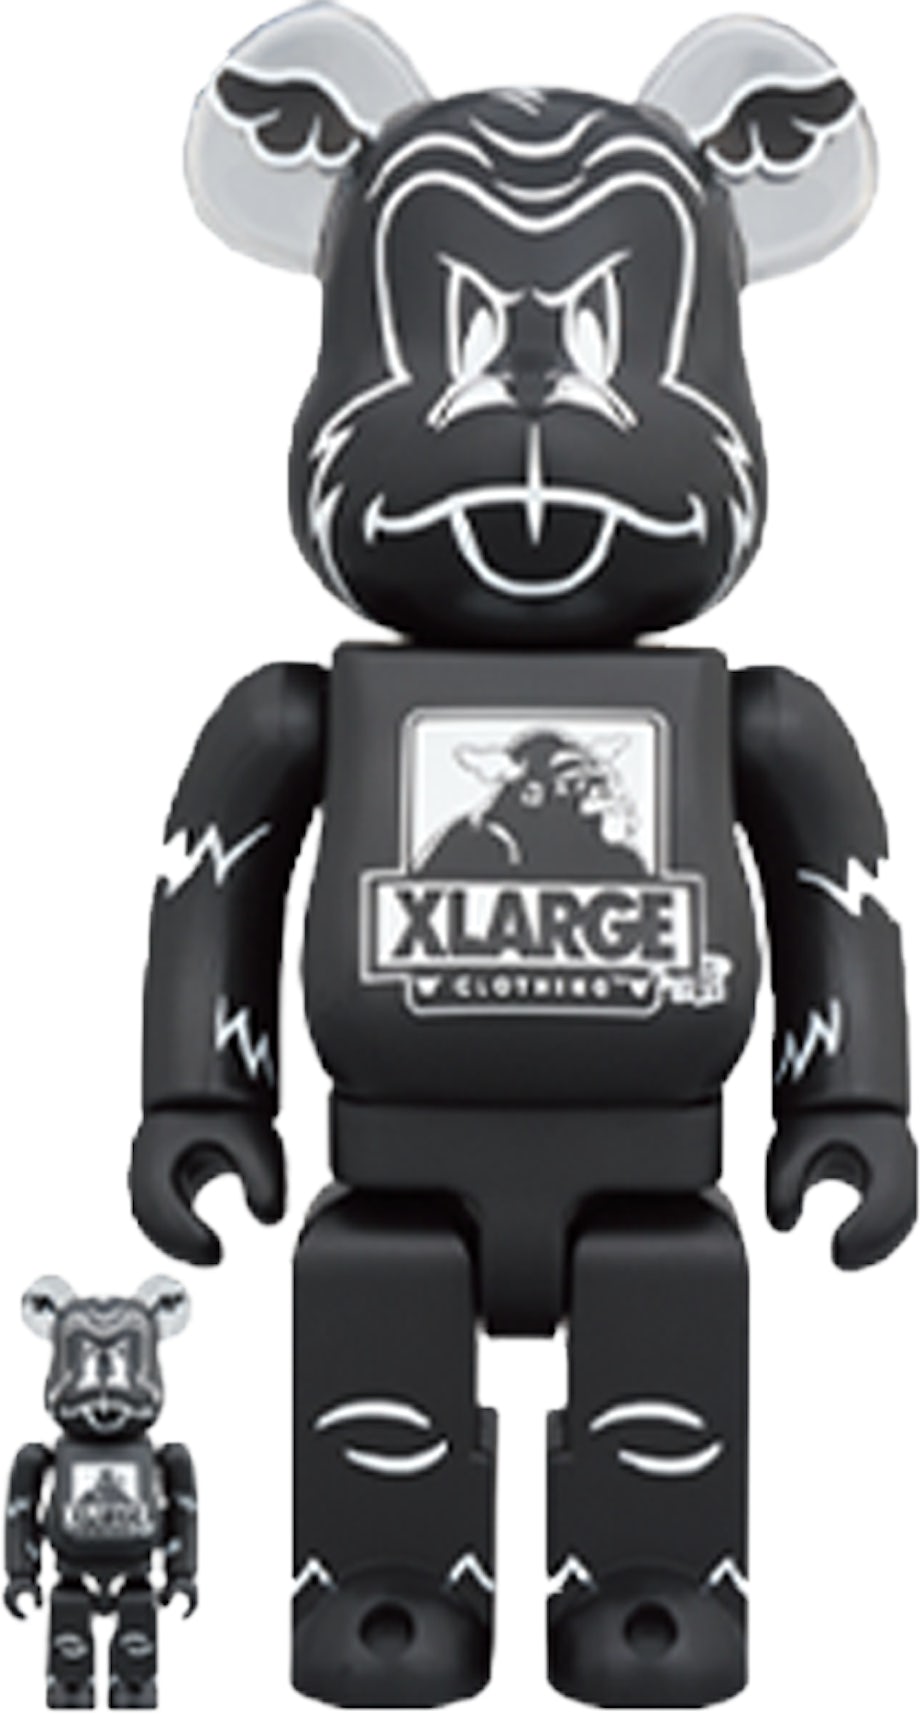 Bearbrick XLARGE x D*Face 100% & 400% Set Black - US